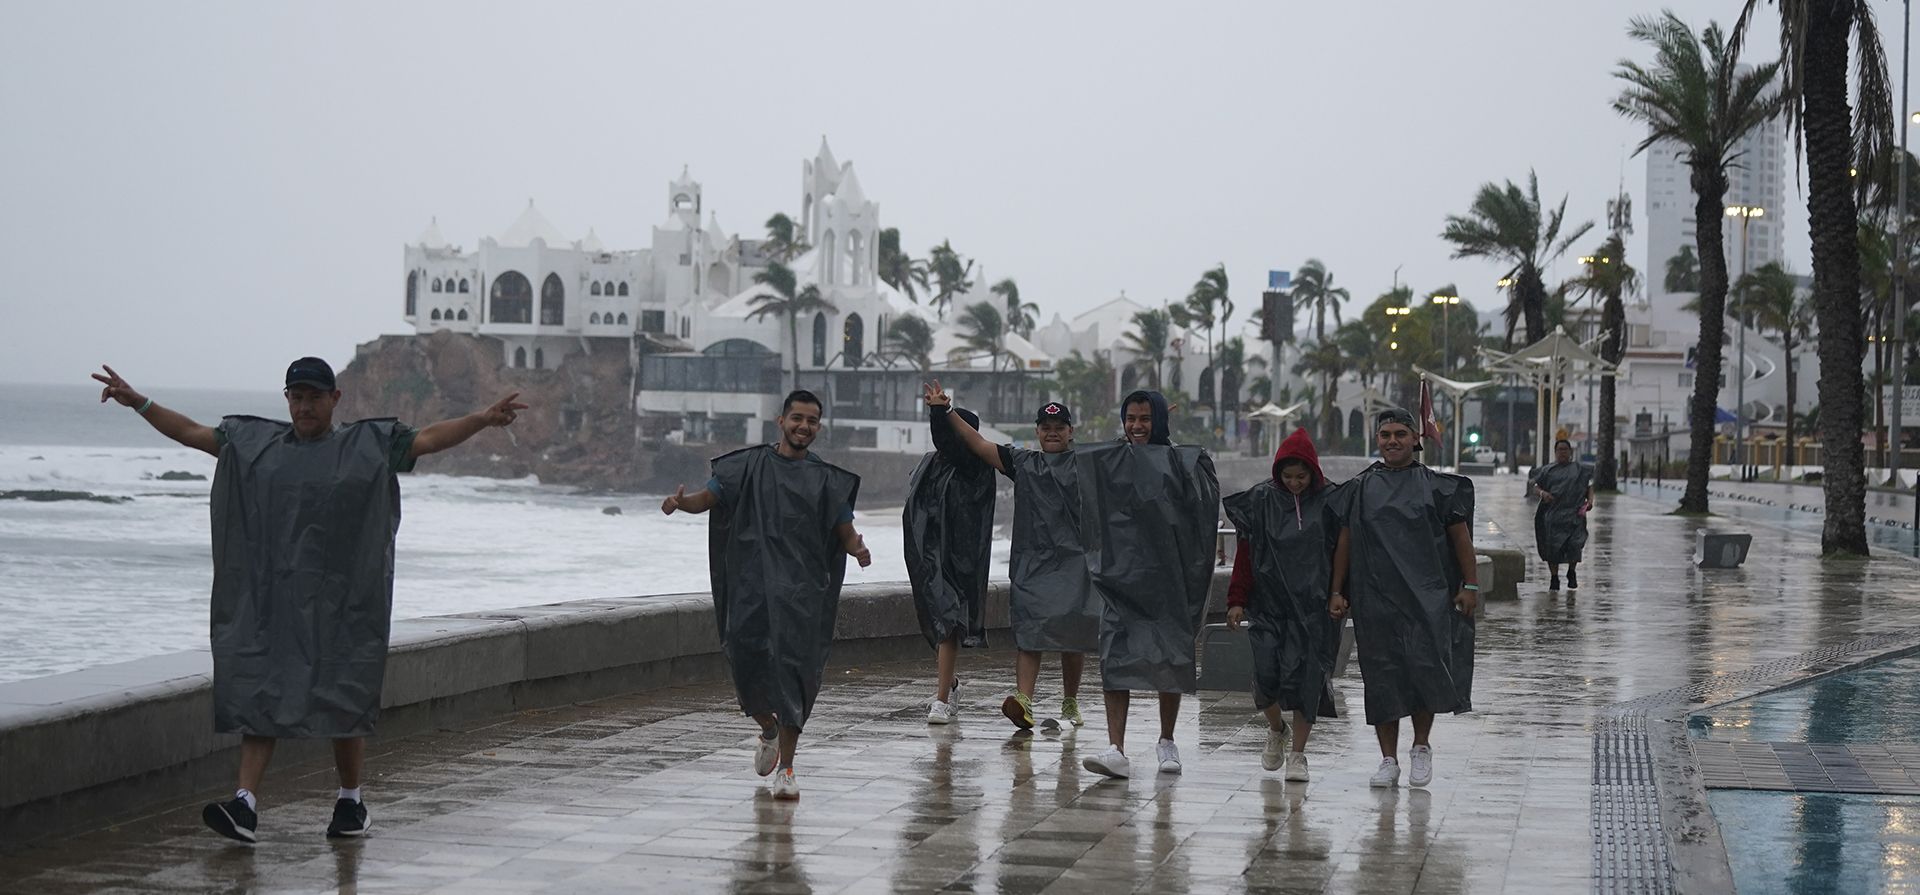 Turistas de Culiacán, México, con bolsas de plástico, bromean con la cámara mientras caminan por la costa de Mazatlán, México, la madrugada del lunes 3 de octubre de 2022, cuando se acerca el huracán Orlene. La tormenta se dirige a la costa noroeste del Pacífico de México entre Mazatlán y San Blas.